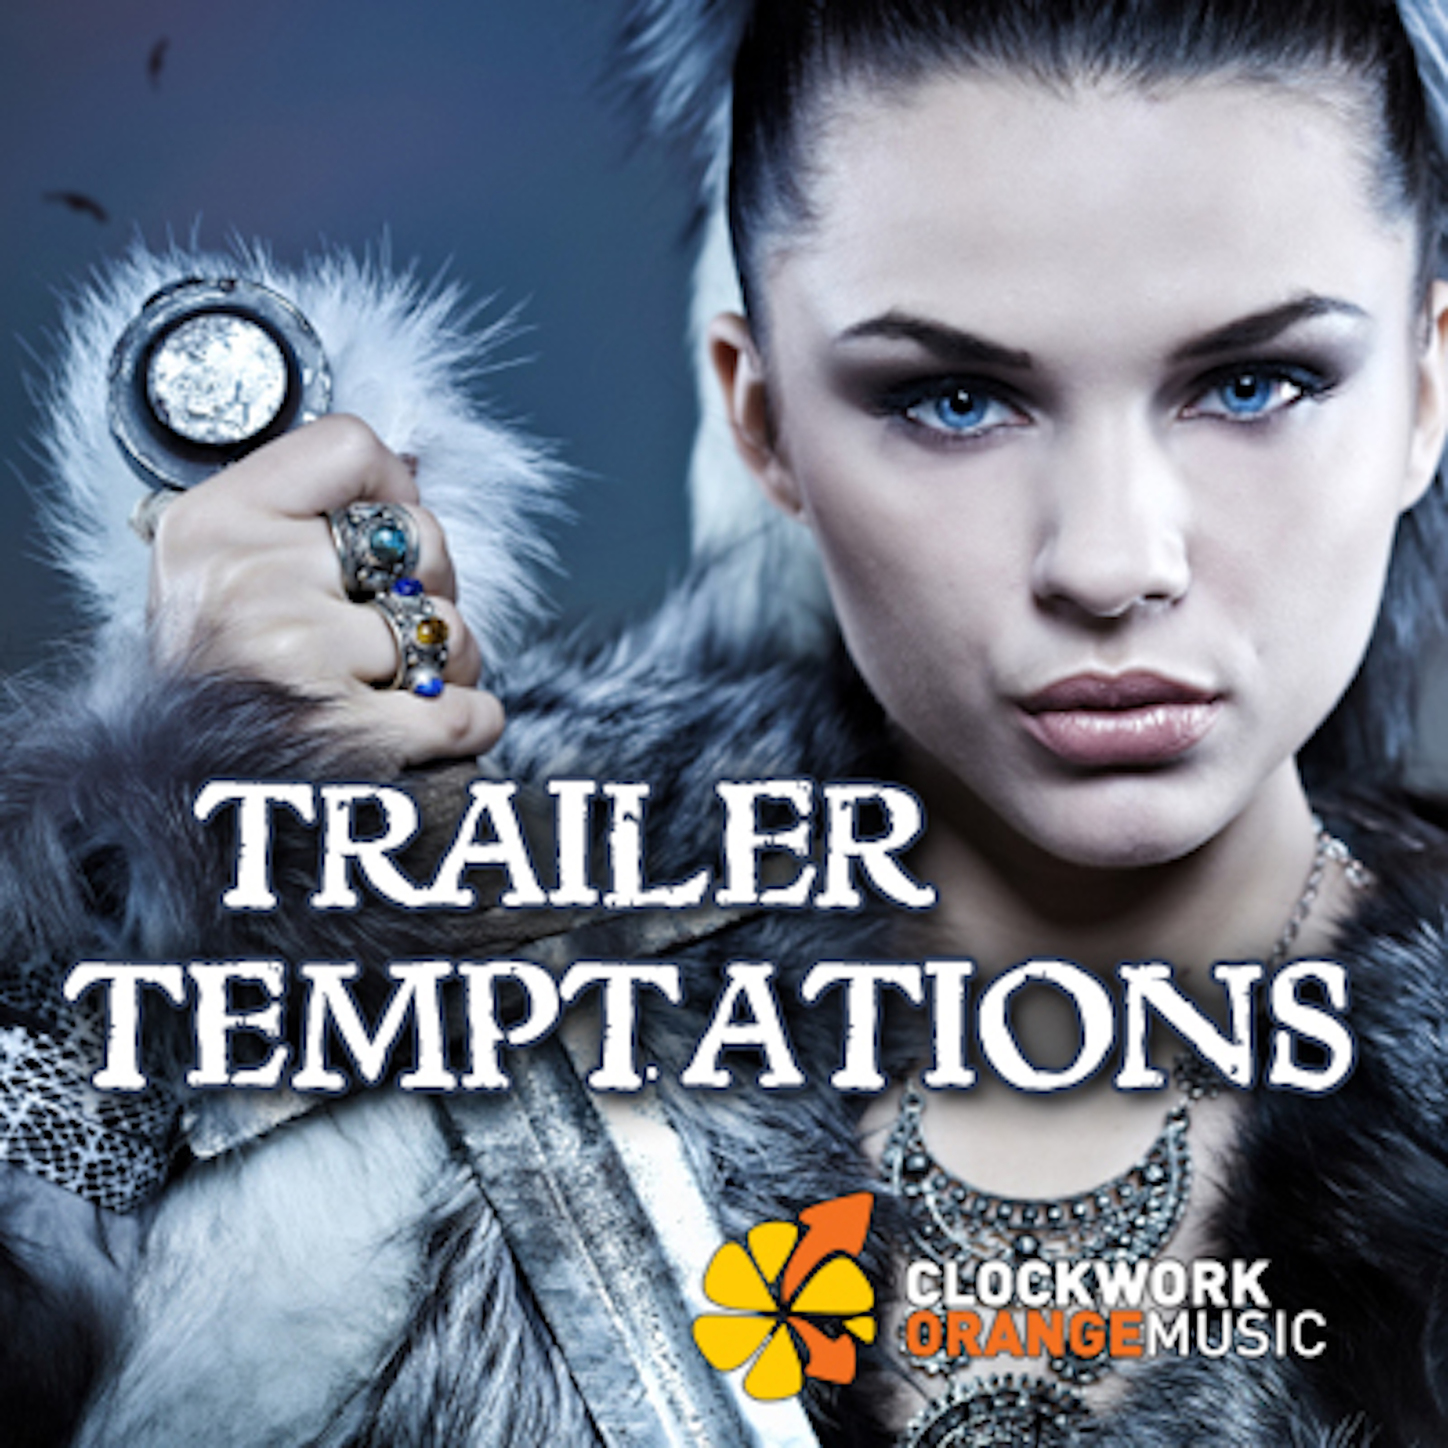 Trailer Temptations